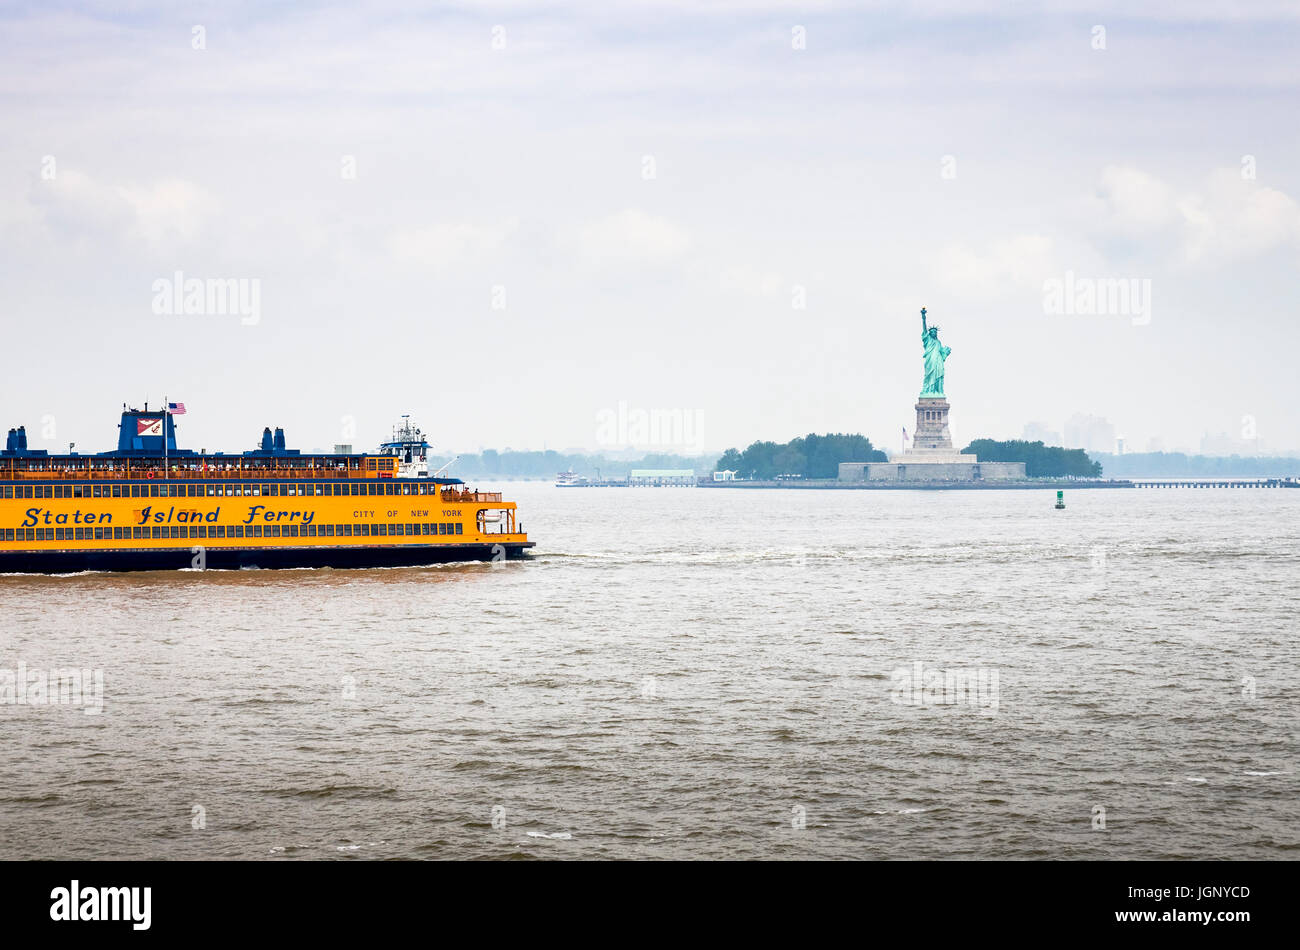 Eine Fähre nach Staten Island gleitet vor der Statue of Liberty, New York Harbor, New York City, Vereinigte Staaten von Amerika. Stockfoto